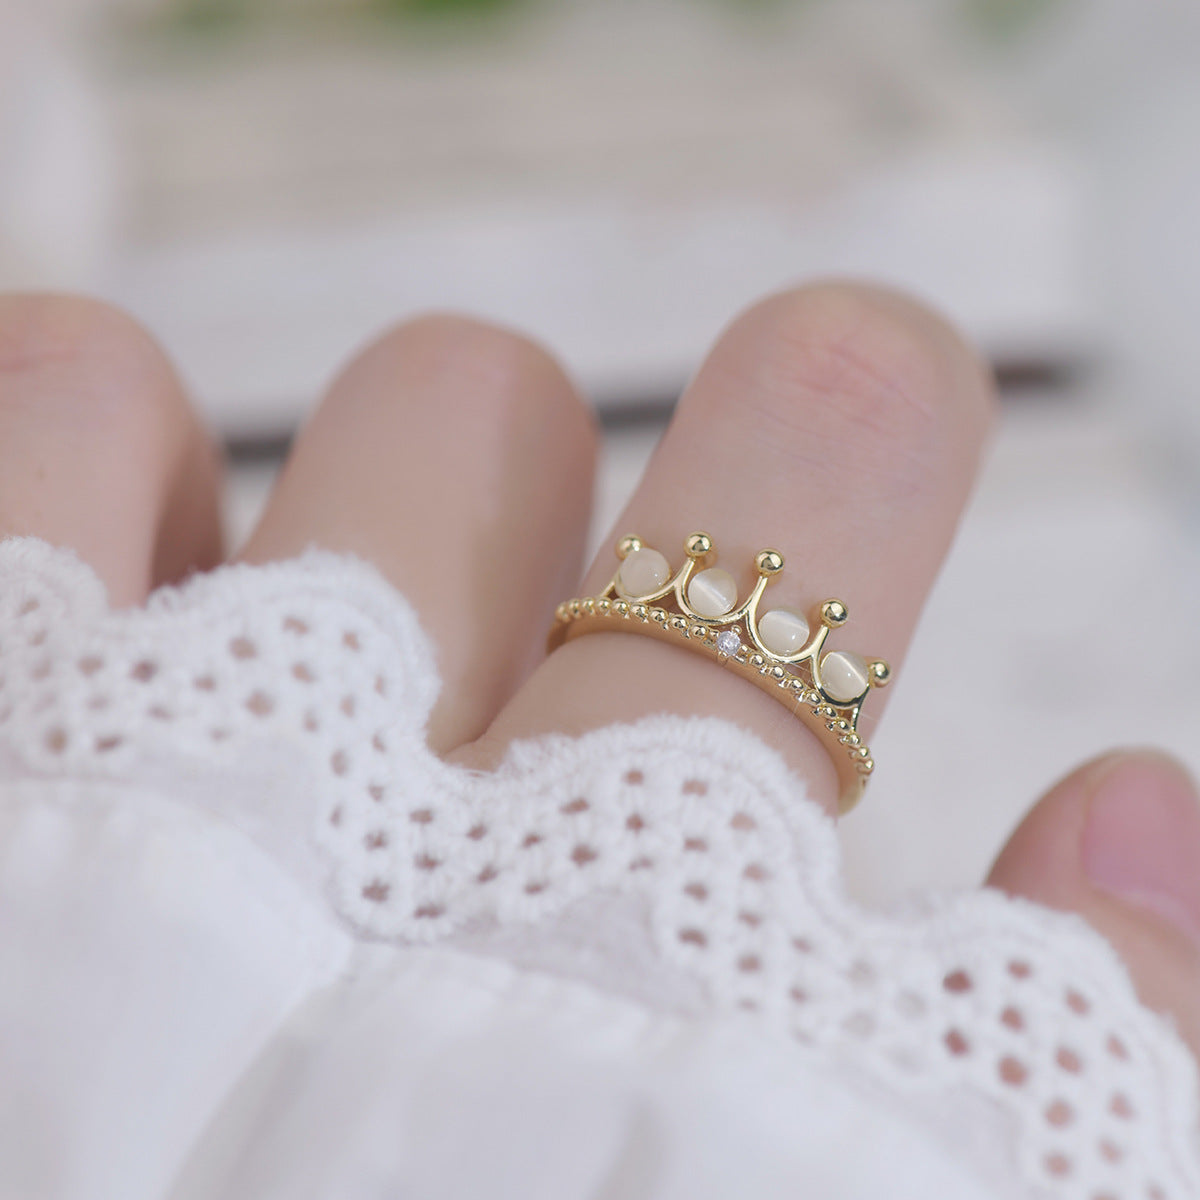 Adjustable Crystal Princess Ring – Momo Babe